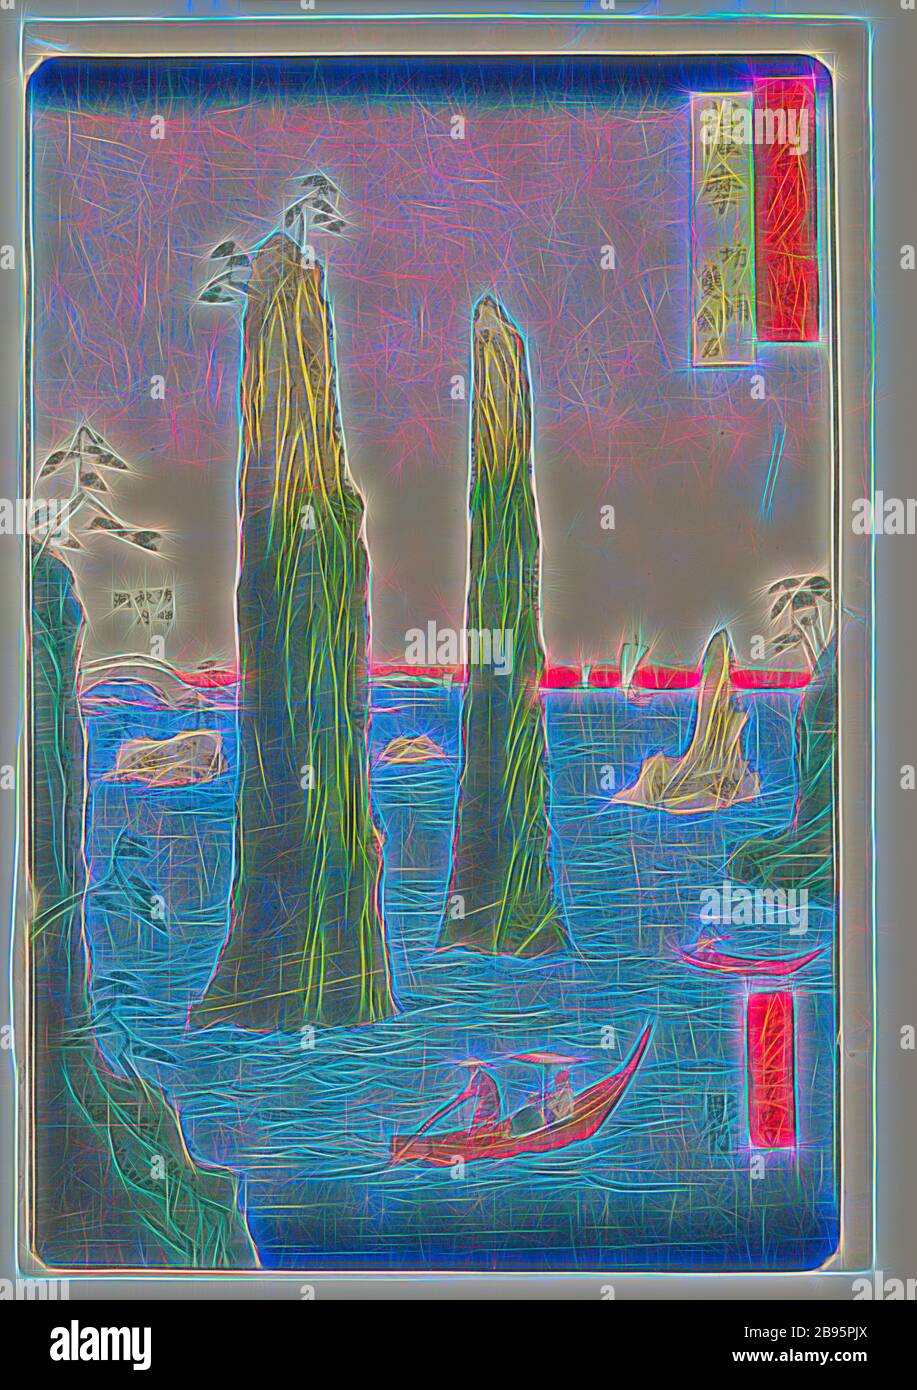 Satsuma, Utagawa Hiroshige 歌川広重 (Japanisch, 1797-1858), Yokogawa Takejirō, Kupferstecher (Japanisch), Edo, 1856. (Dragon 3), Tusche auf Papier, Farbholzschnitt, 13-3/8 x 8-7/8 Zoll, signiert: Hiroshige hitsu Censor's Seal: Aratame, anderer Titel, Untertitel: Zwillingsschwert Felsen bei Bo no Ura, Serie, berühmte Orte in den sechzig-ungeraden Provinzen 六十余州名所図絵, Asiatische Kunst, neu gestaltet von Gibon, Design von warmen fröhlich glühenden Helligkeit und Lichtstrahlen Ausstrahlung. Klassische Kunst neu erfunden mit einem modernen Twist. Fotografie inspiriert von Futurismus, umarmt dynamische Energie der modernen Technologie, Bewegung, Geschwindigkeit und revolutionieren Cu Stockfoto